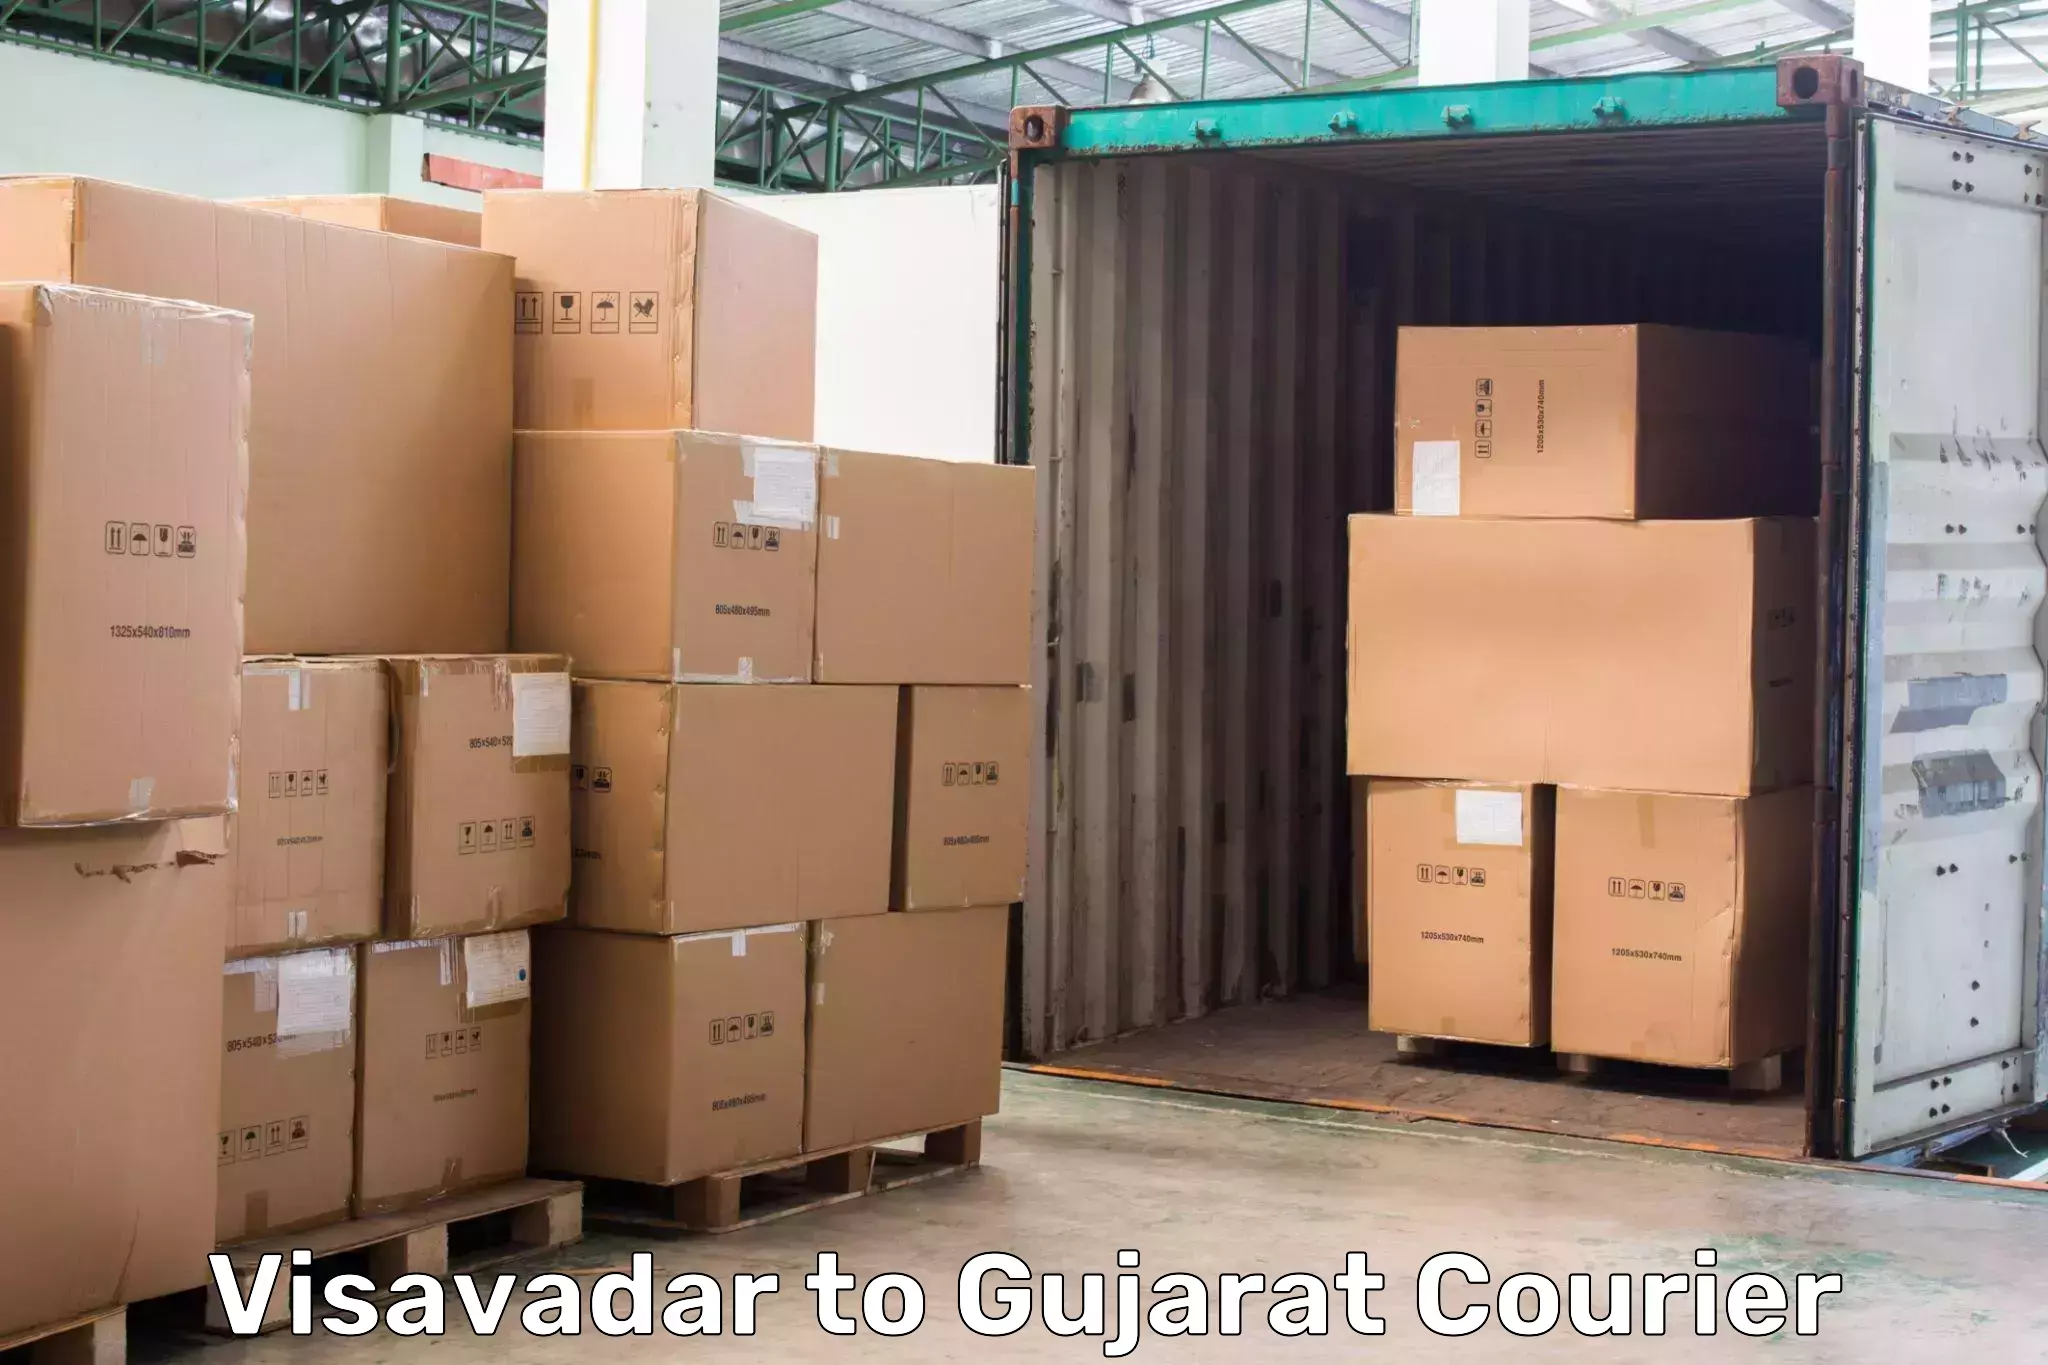 Premium courier services Visavadar to Madhavpur